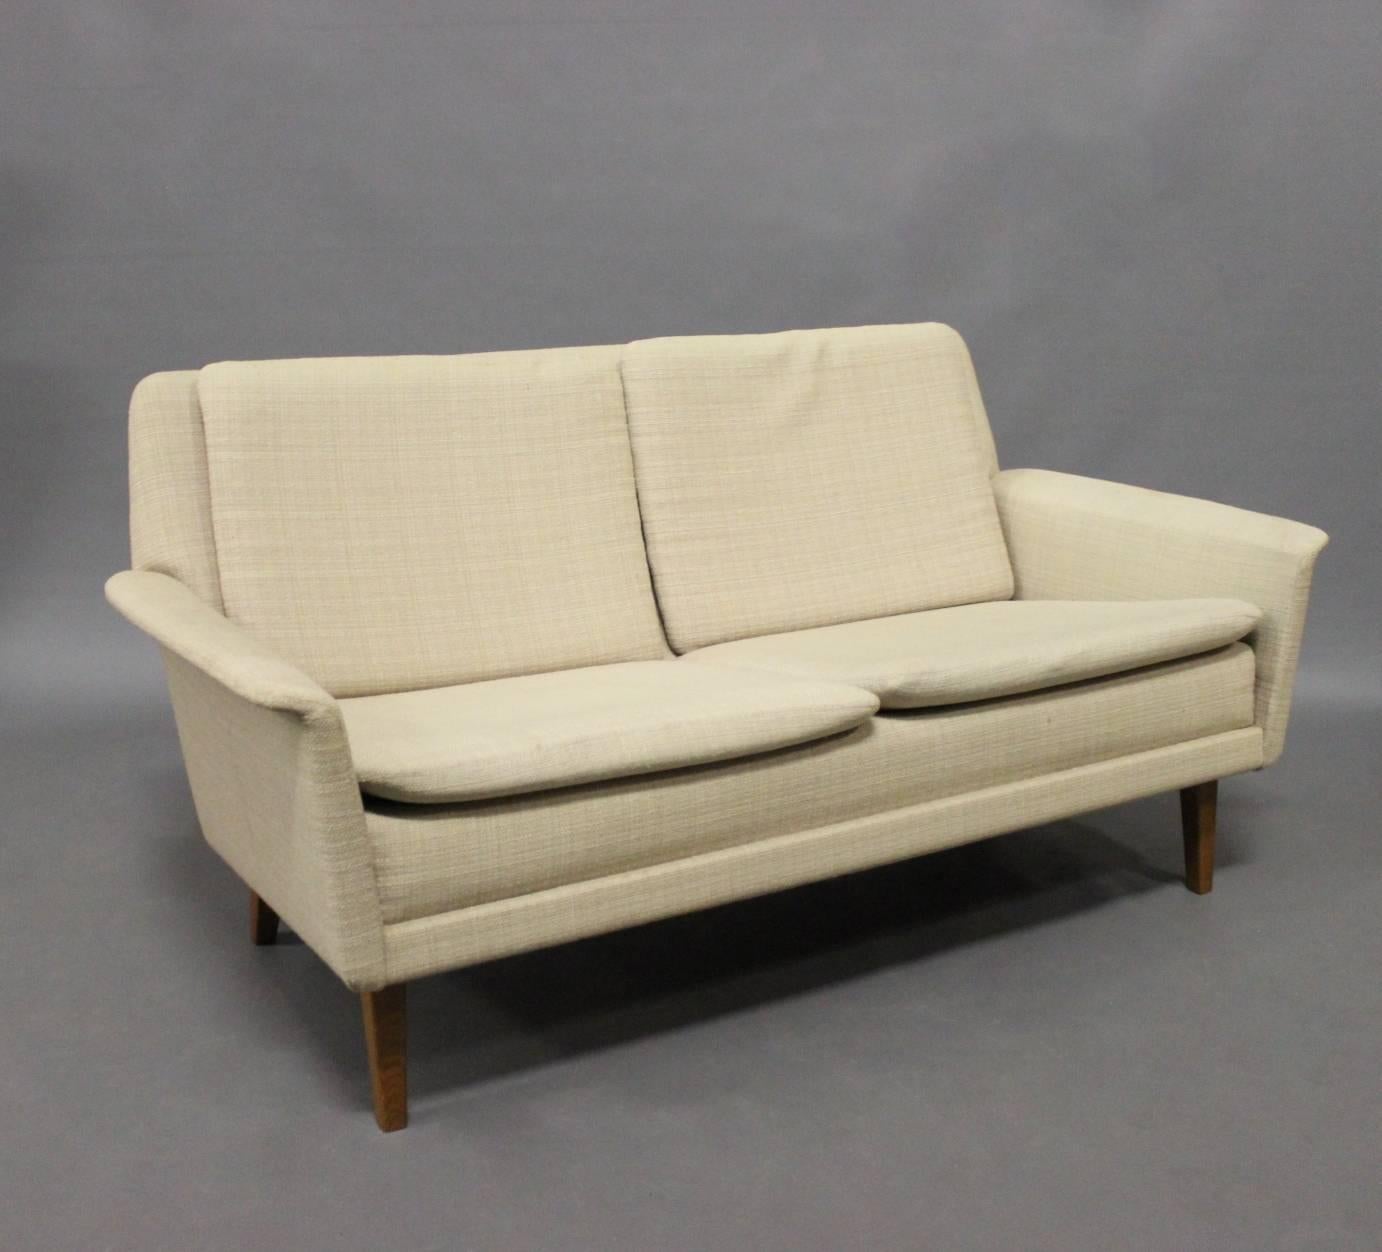 Le canapé DUX à deux places conçu par Folke Ohlsson et fabriqué par Fritz Hansen en 1968 est une belle représentation du design moderne du milieu du siècle. Le travail de Folke Ohlsson combinait souvent des lignes épurées avec le confort et la